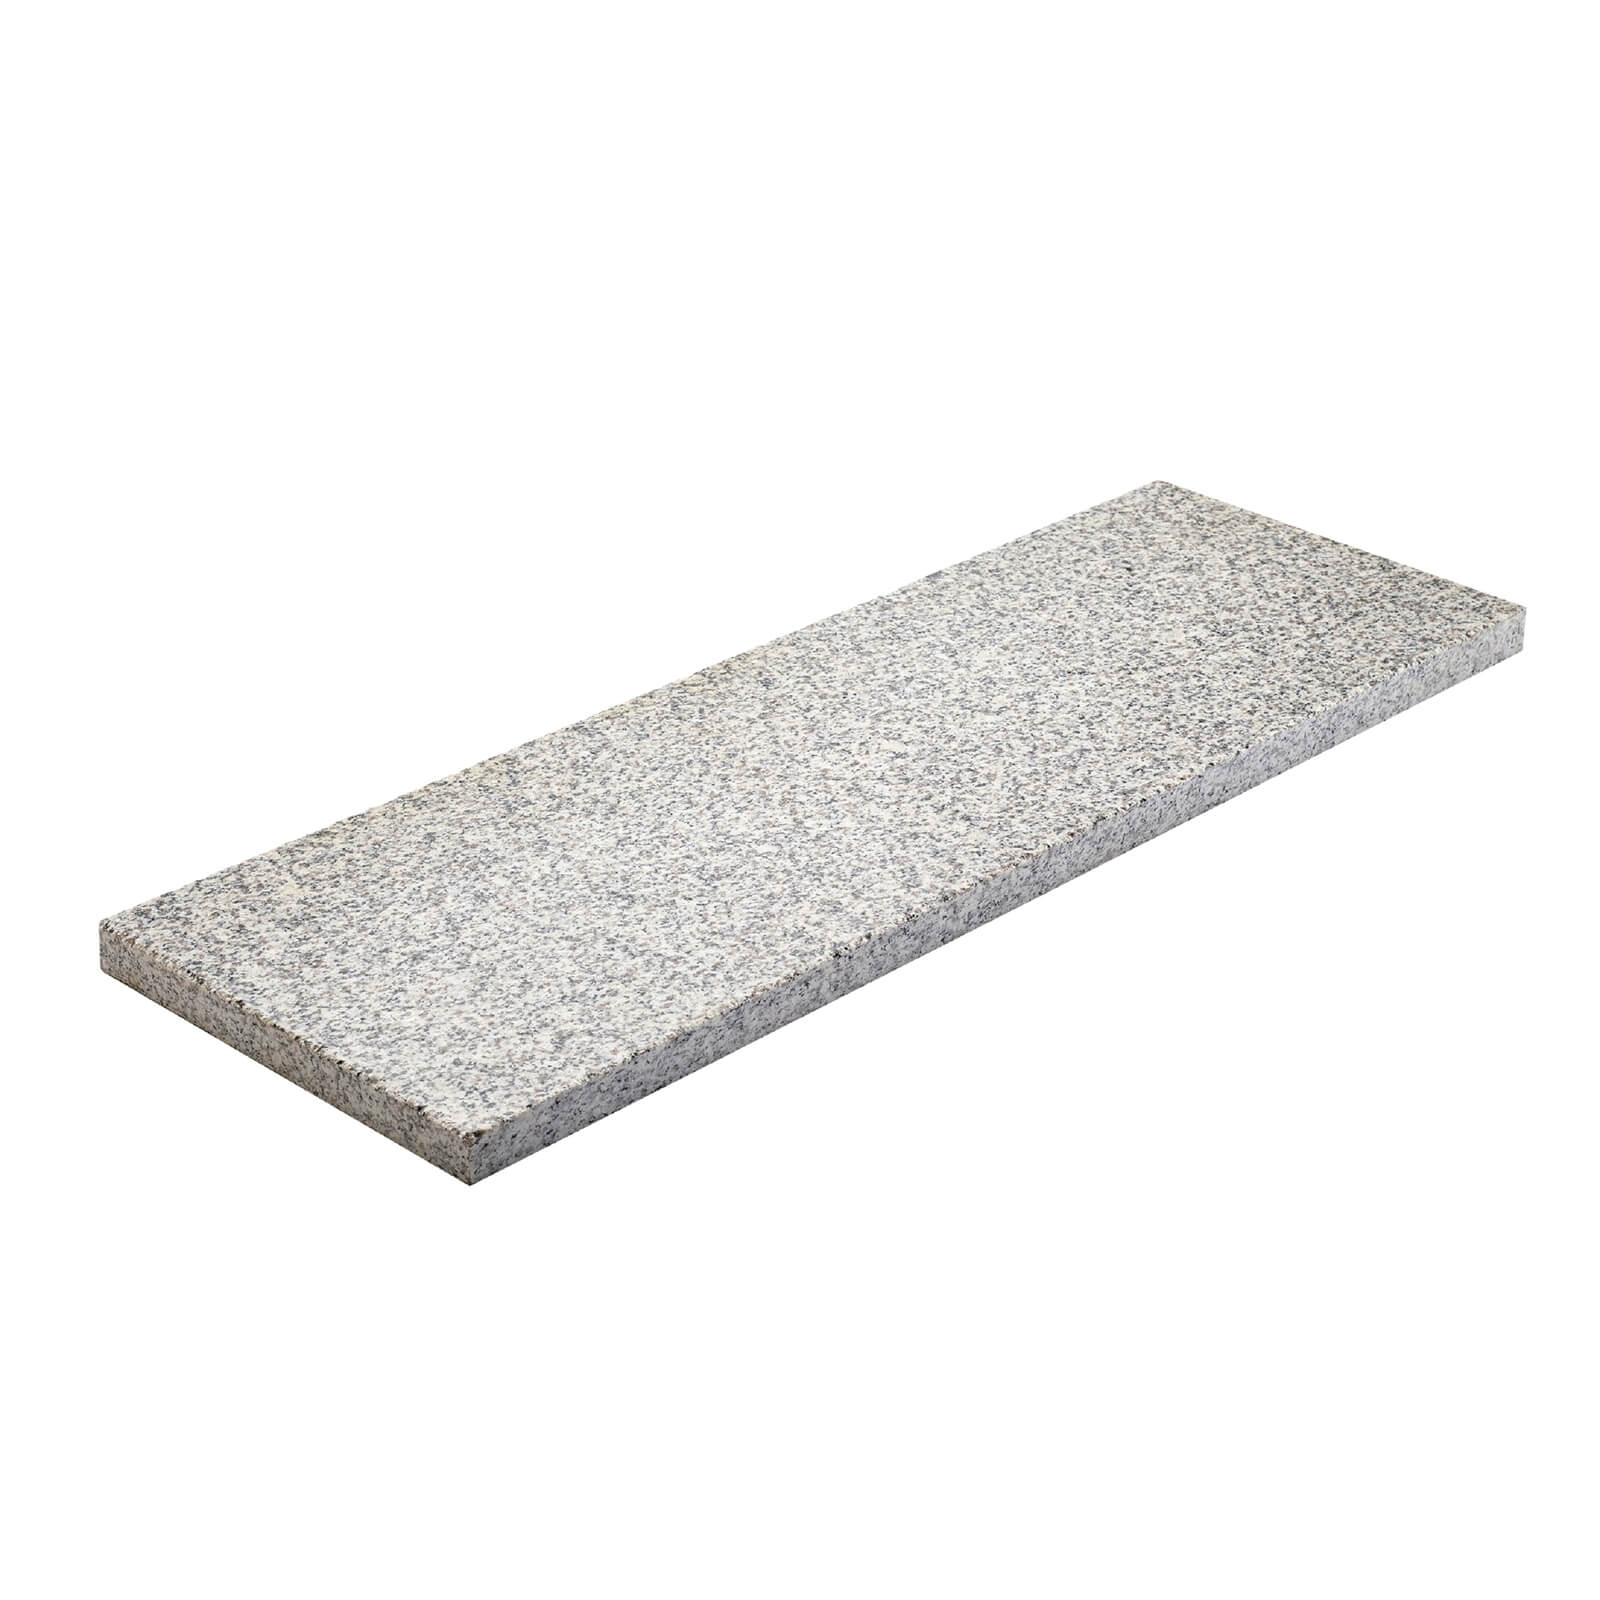 Granite Paving 600 x 200mm Light Grey - Full Pack of 92 Slabs